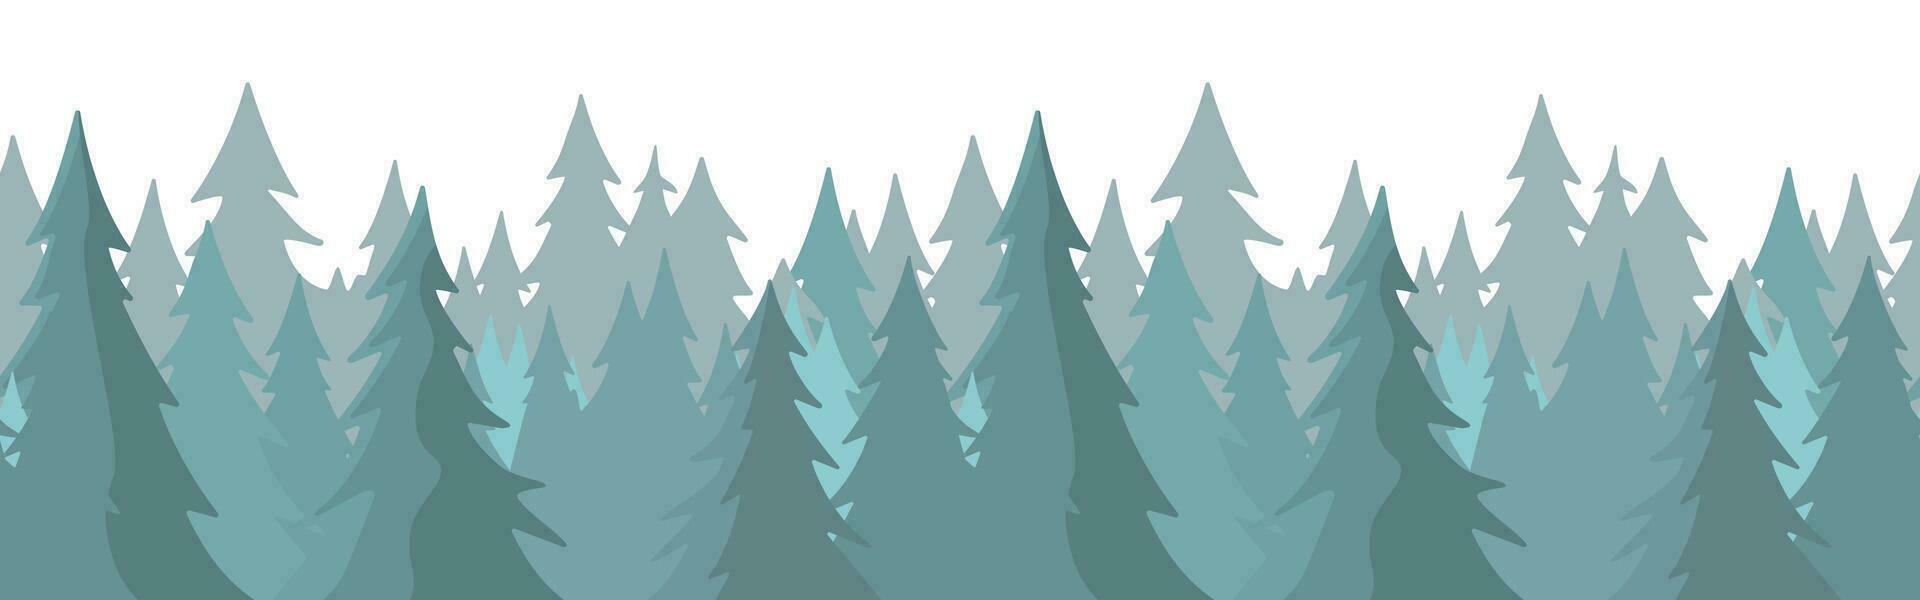 skog panorama se. tall träd landskap vektor illustration. gran silhuett. baner bakgrund. dimma vintergröna barr- träd.